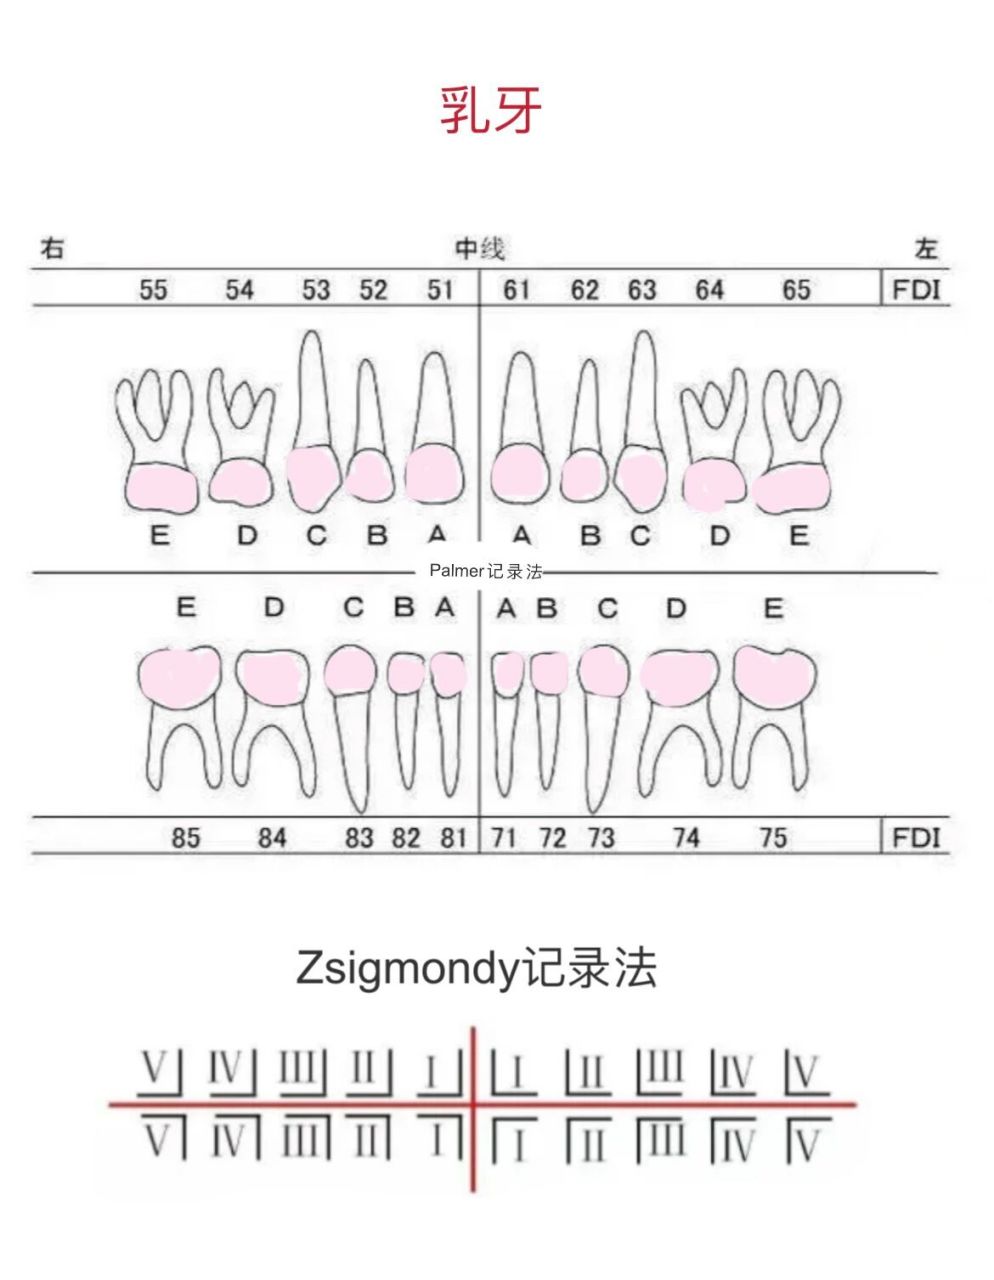 口腔护士笔记5牙位记录 1部位记录法:分为4区,用abcd分别代表患者的右